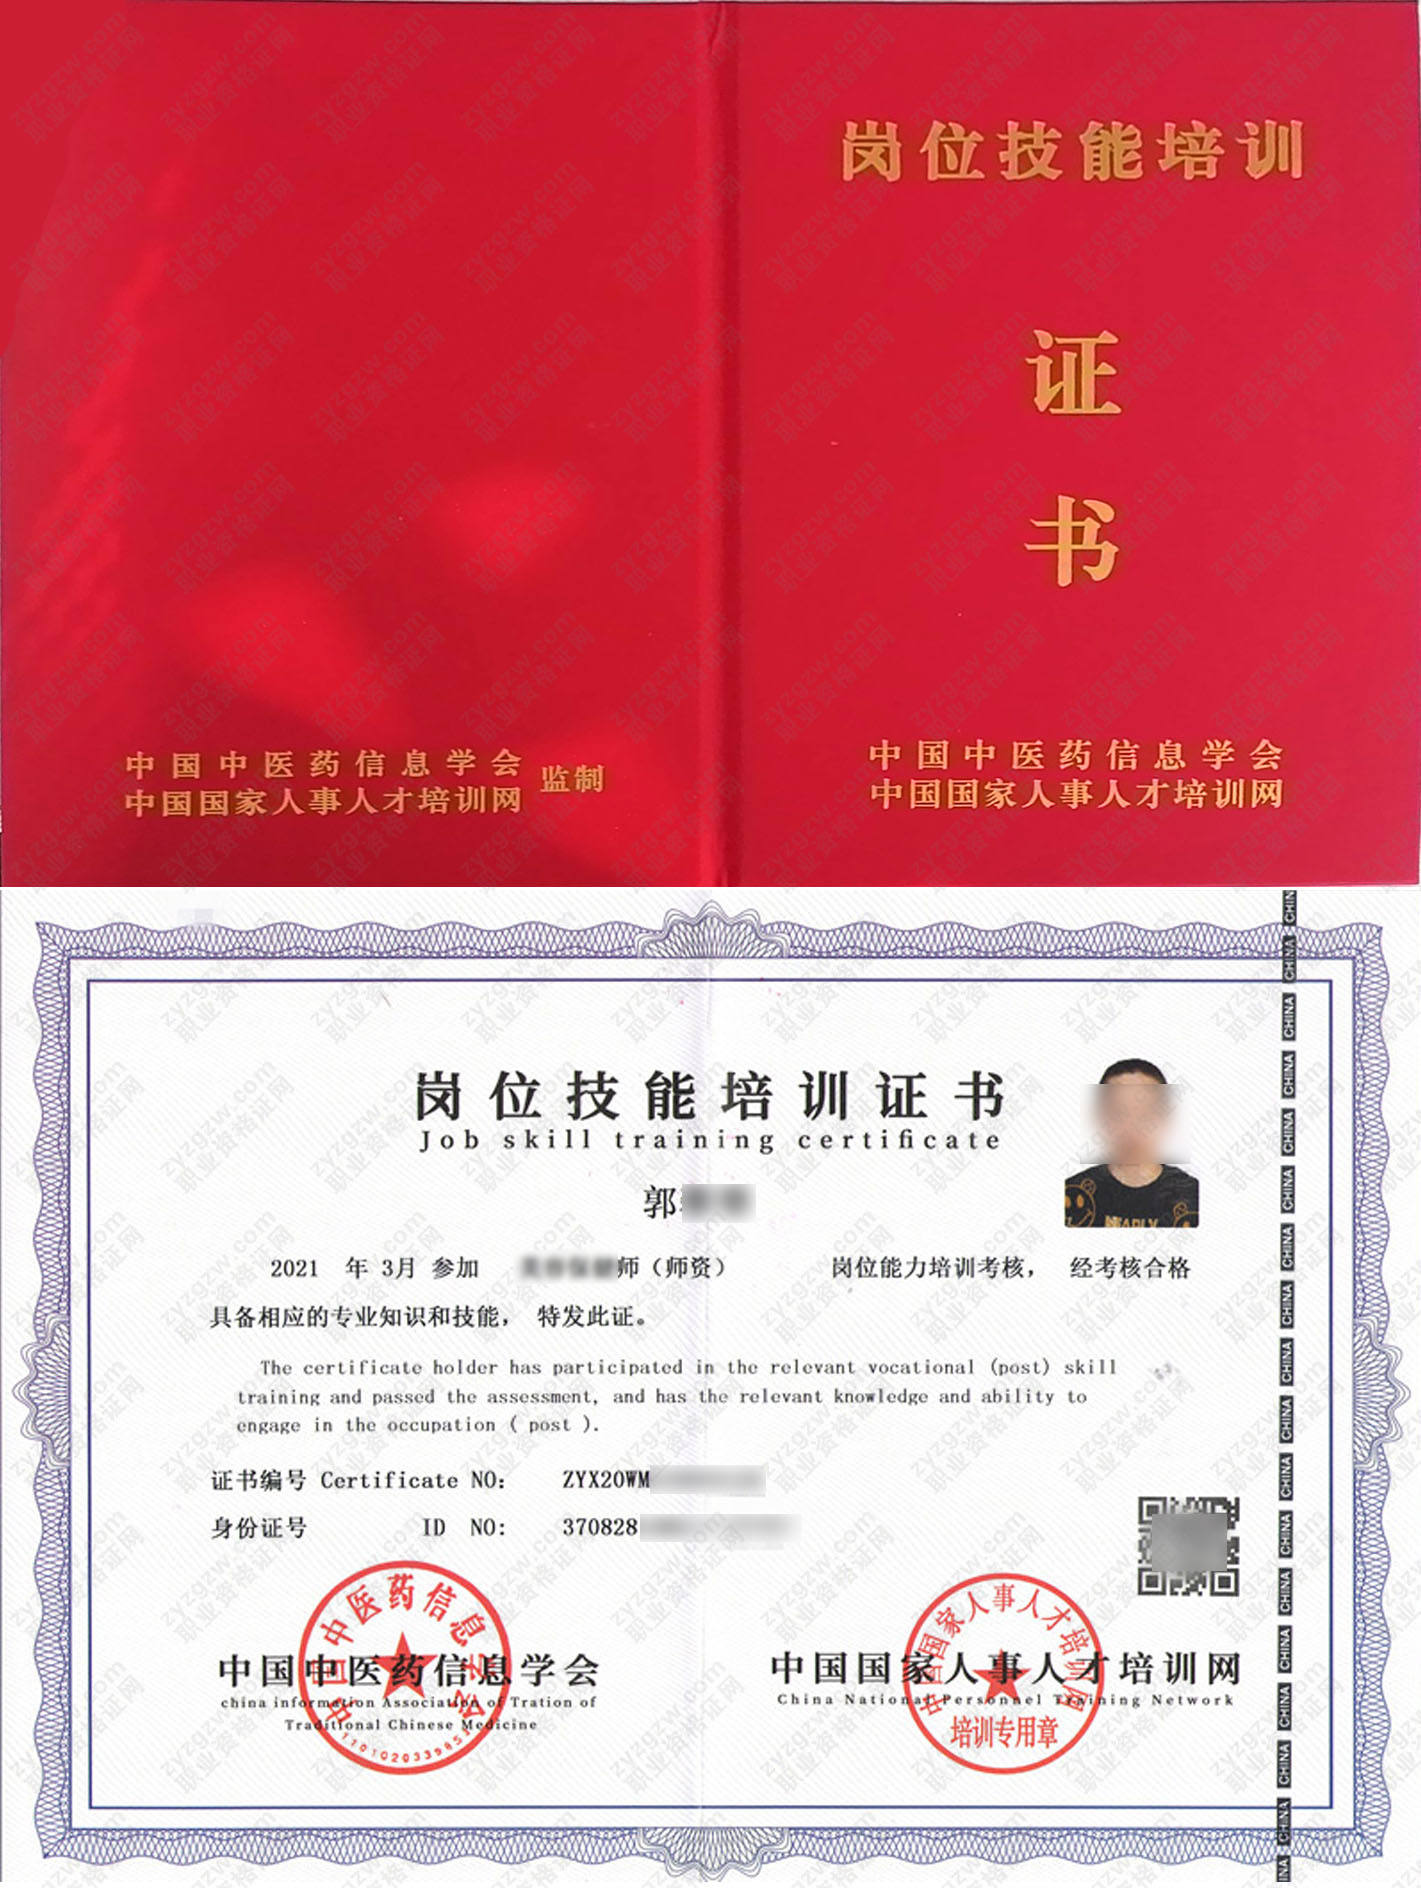 中国国家人事人才培训网 环境健康维护师 岗位技能培训证书